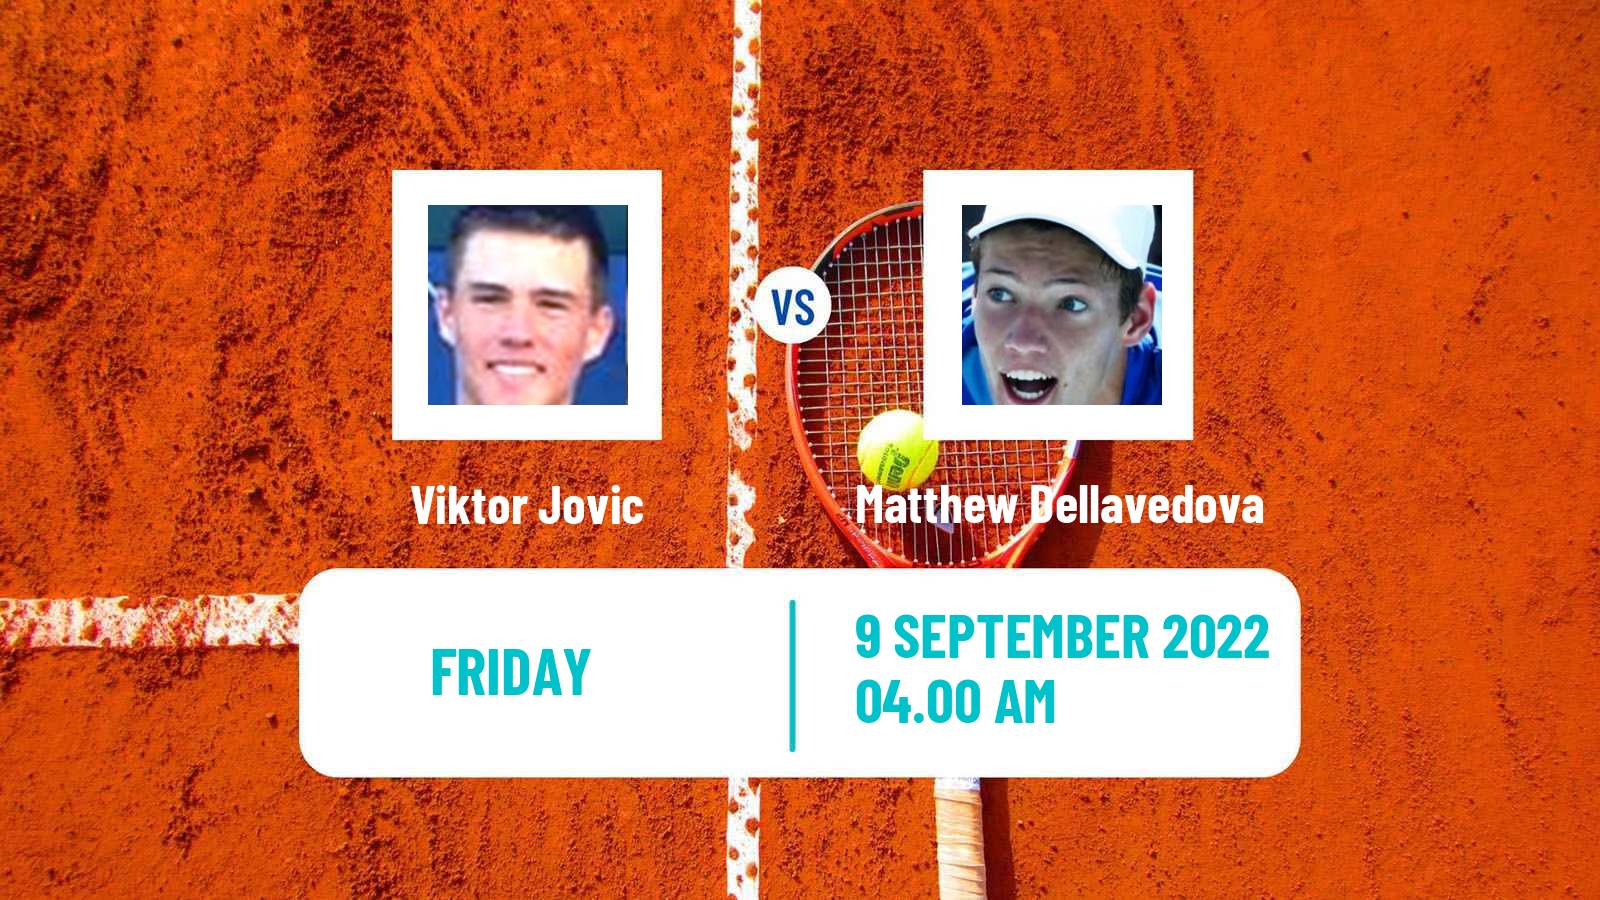 Tennis ITF Tournaments Viktor Jovic - Matthew Dellavedova